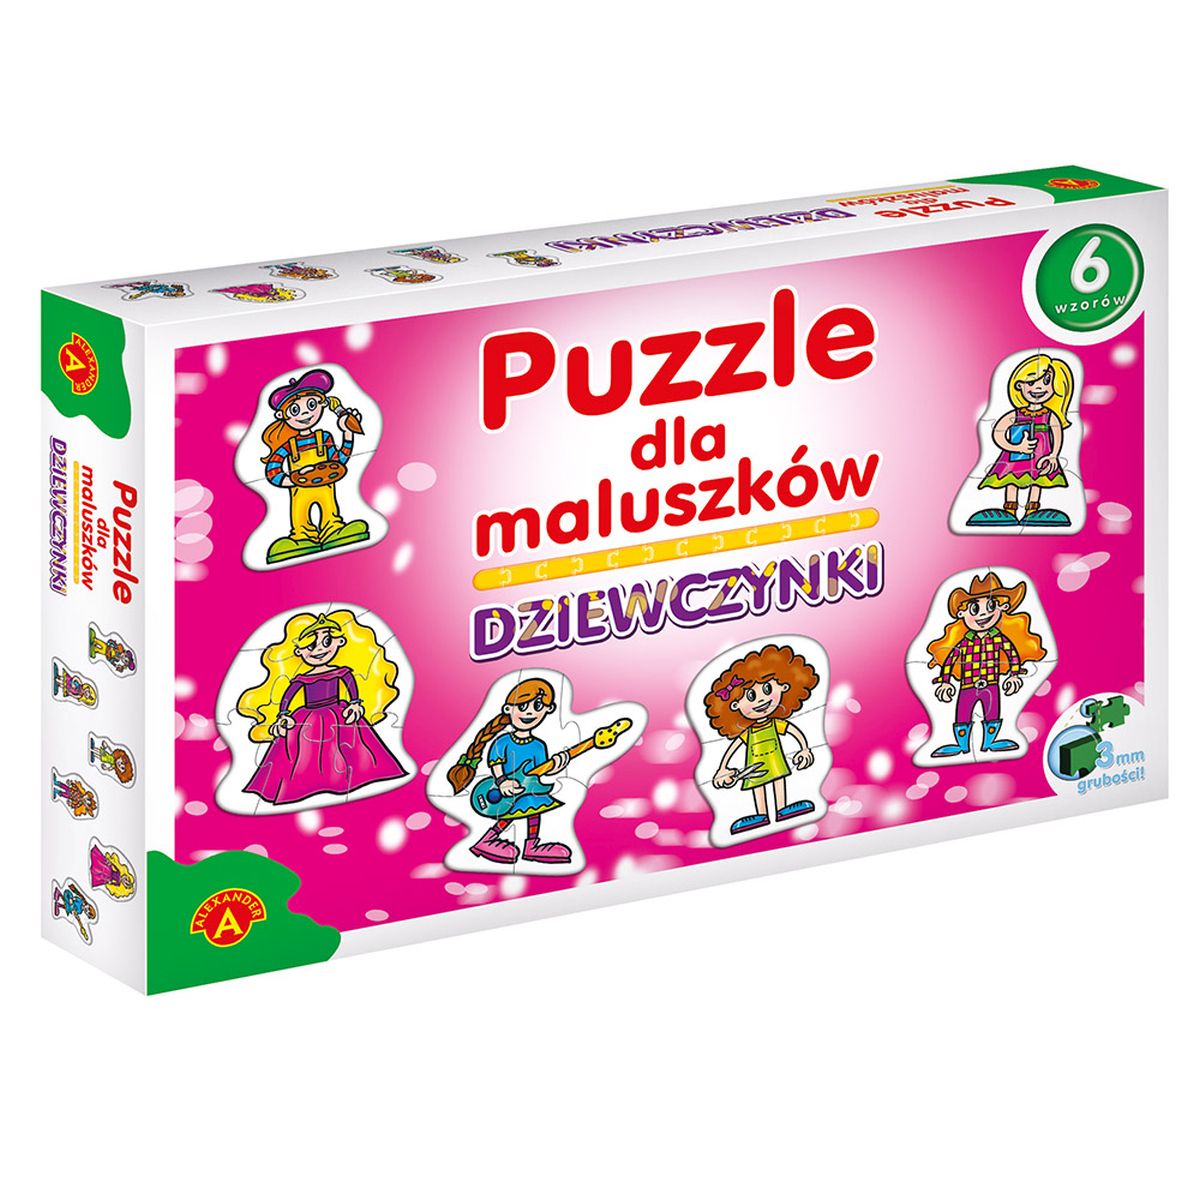 Puzzle Alexander dla maluszków - dziewczynki mix el. (5906018005400)